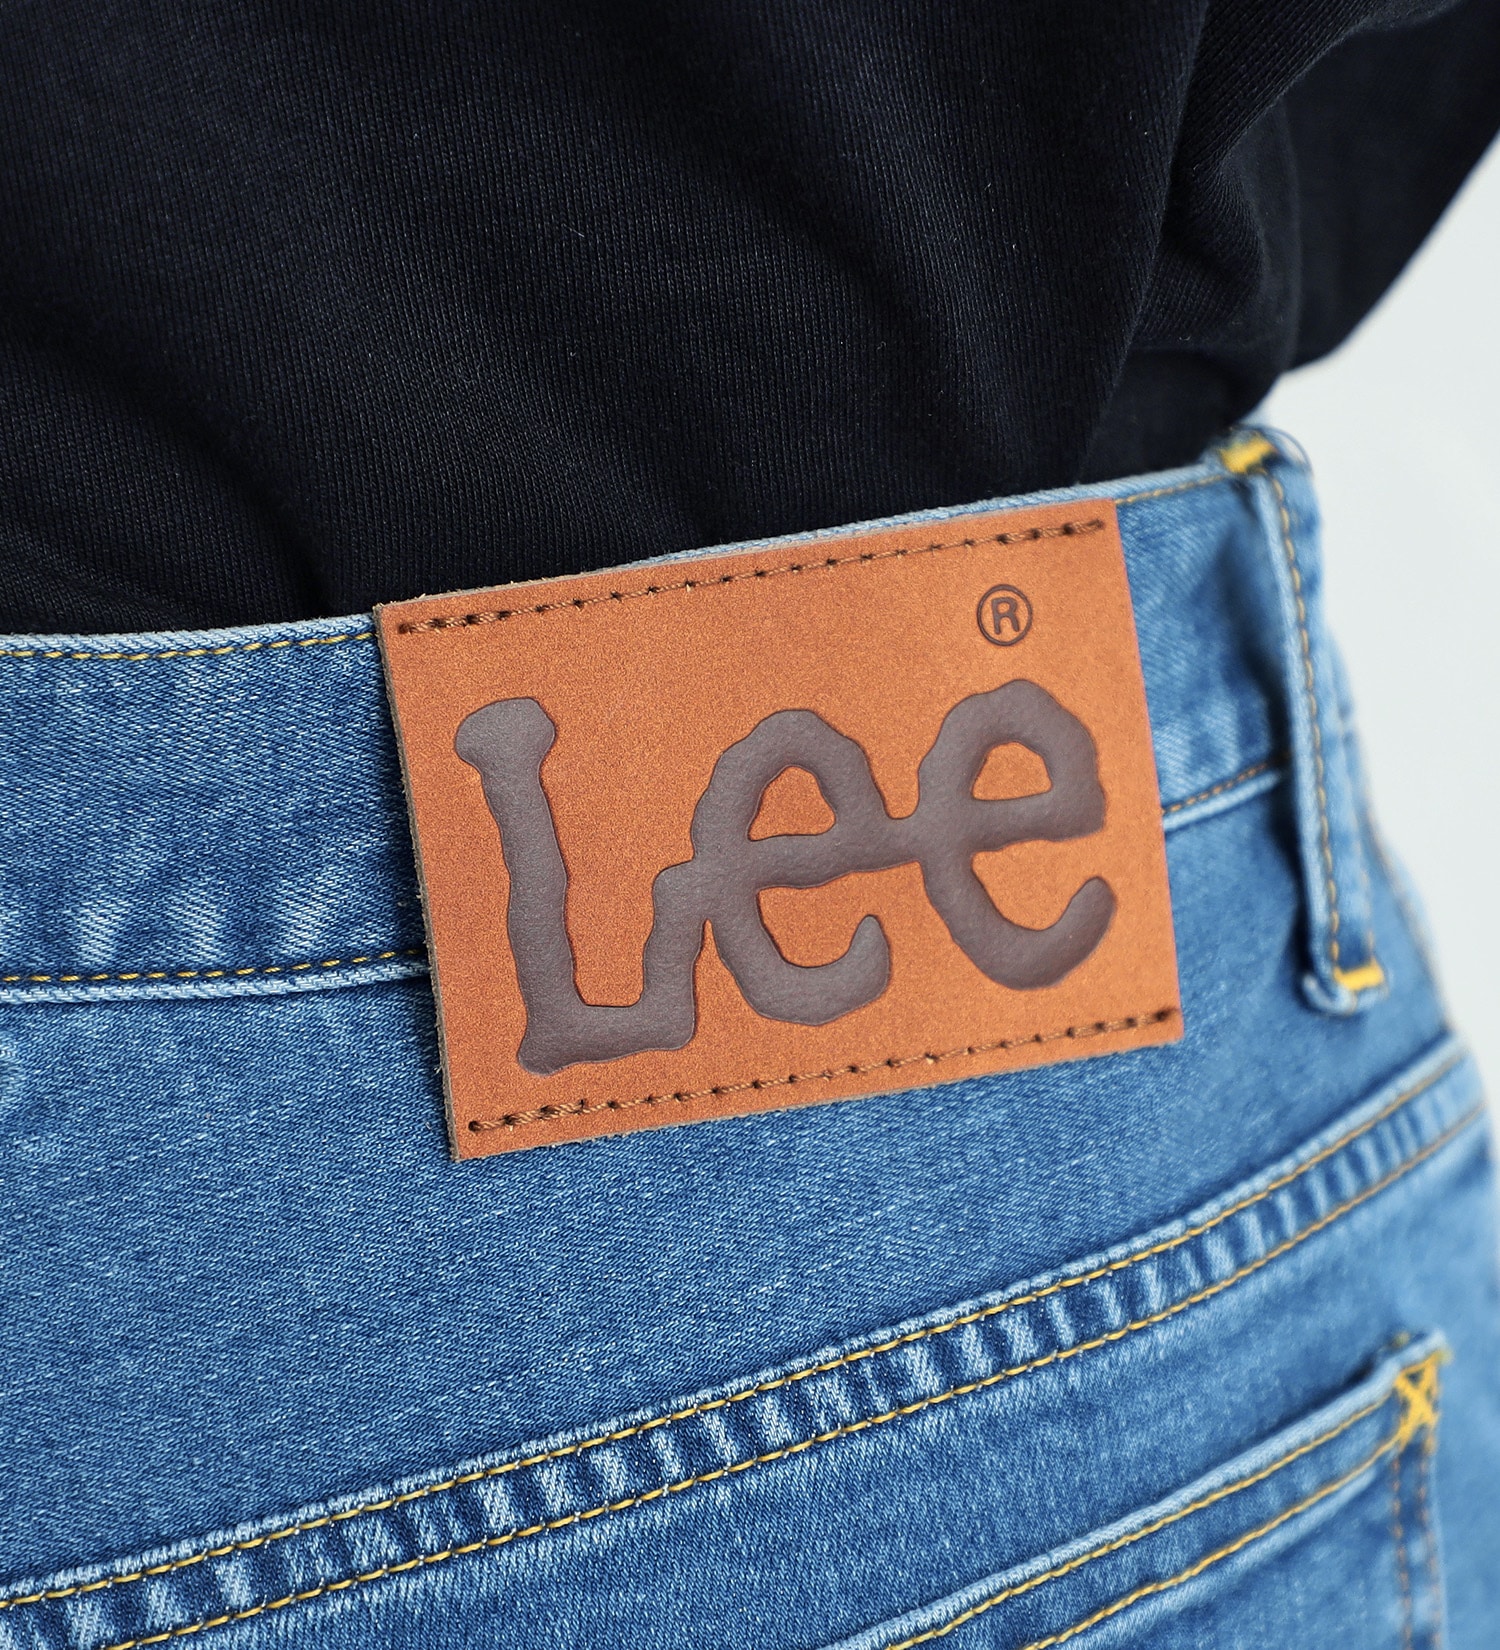 Lee(リー)の【TIME SALE】【涼】ドライタッチで涼しく快適AMERICAN STANDARD 102 ブーツカット　吸汗速乾/梅雨対策【COOL】|パンツ/デニムパンツ/メンズ|淡色ブルー